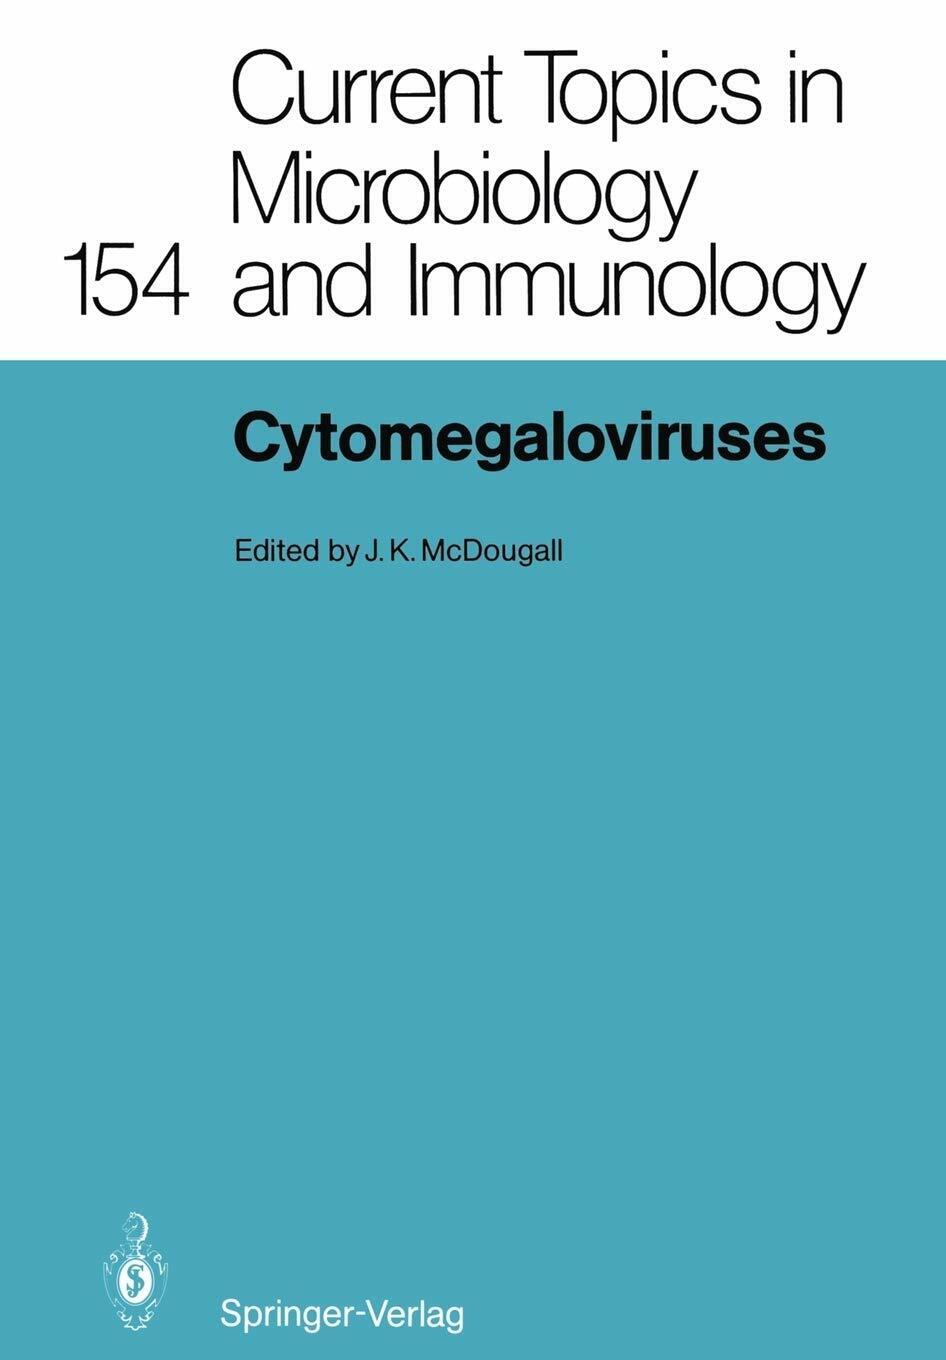 Cytomegaloviruses - K. McDougall - Springer, 2012